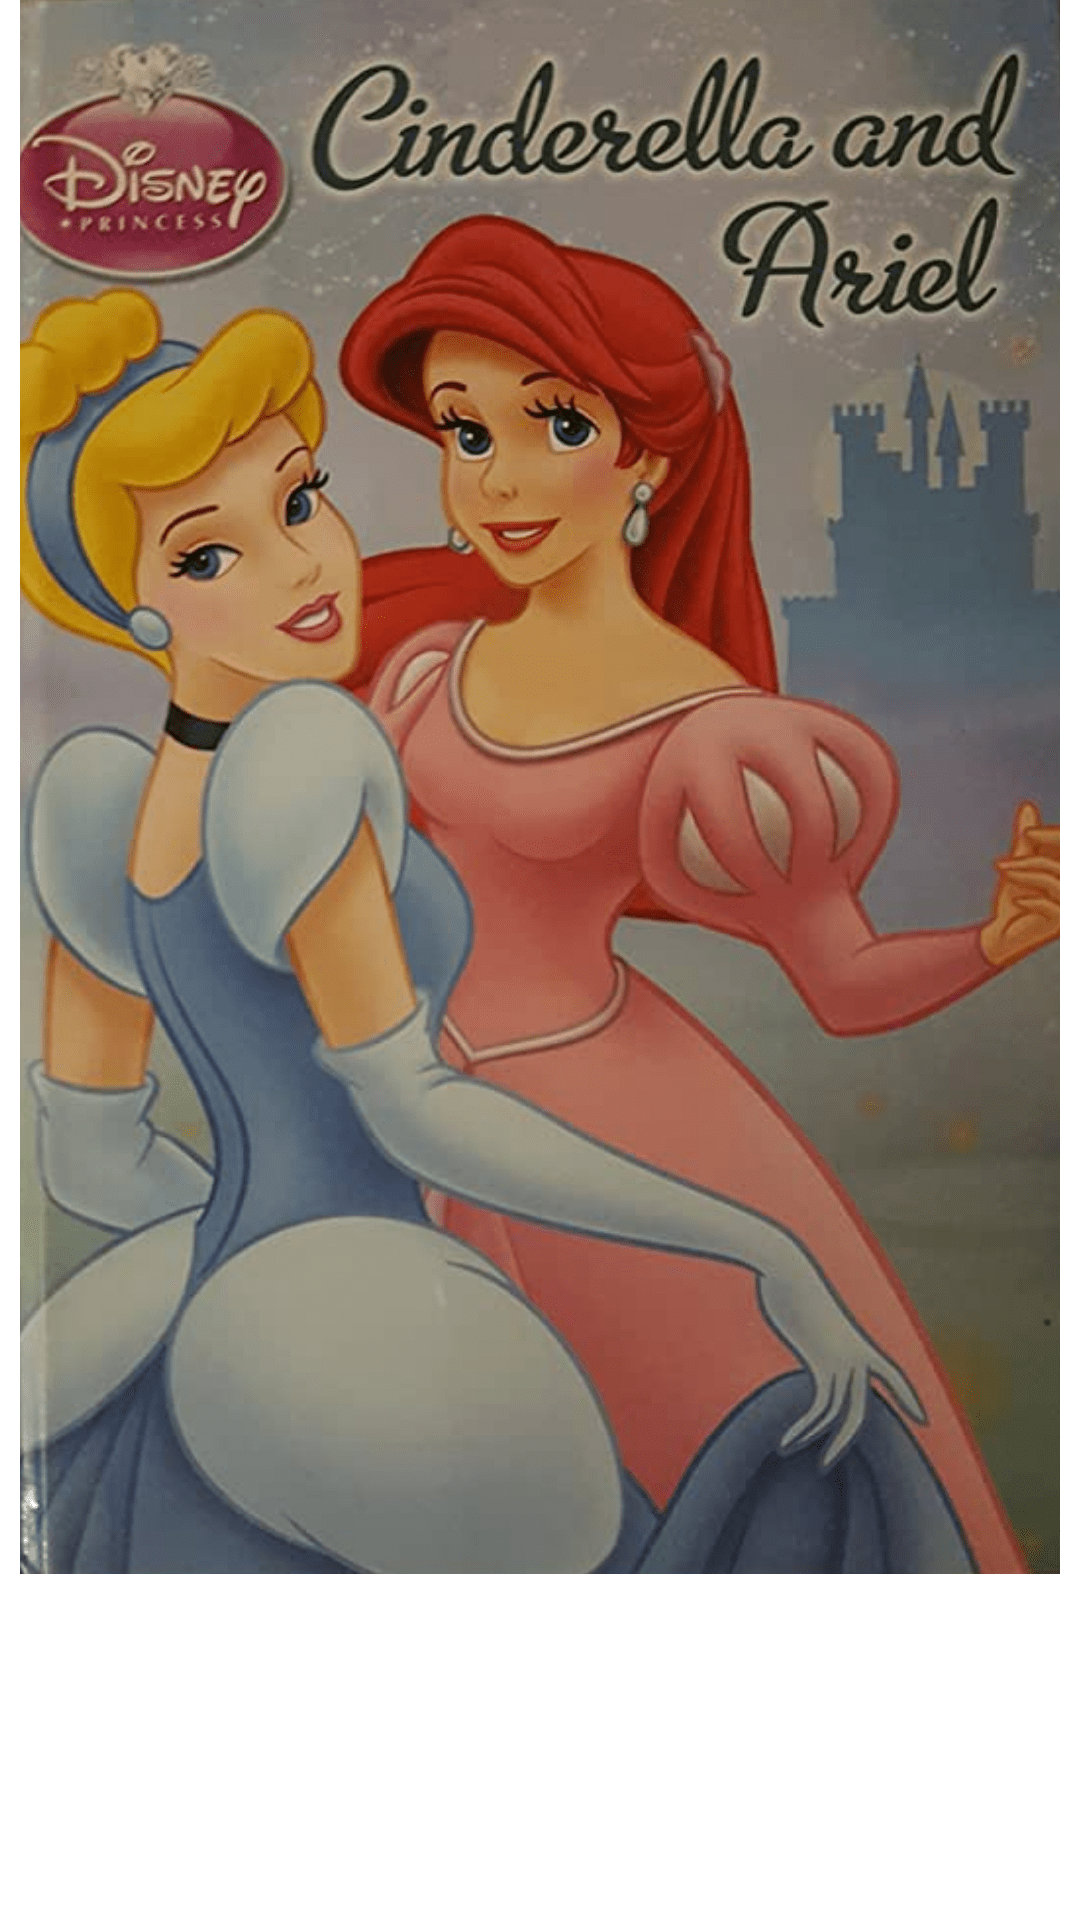 Cinderella and Ariel: Disney Princess